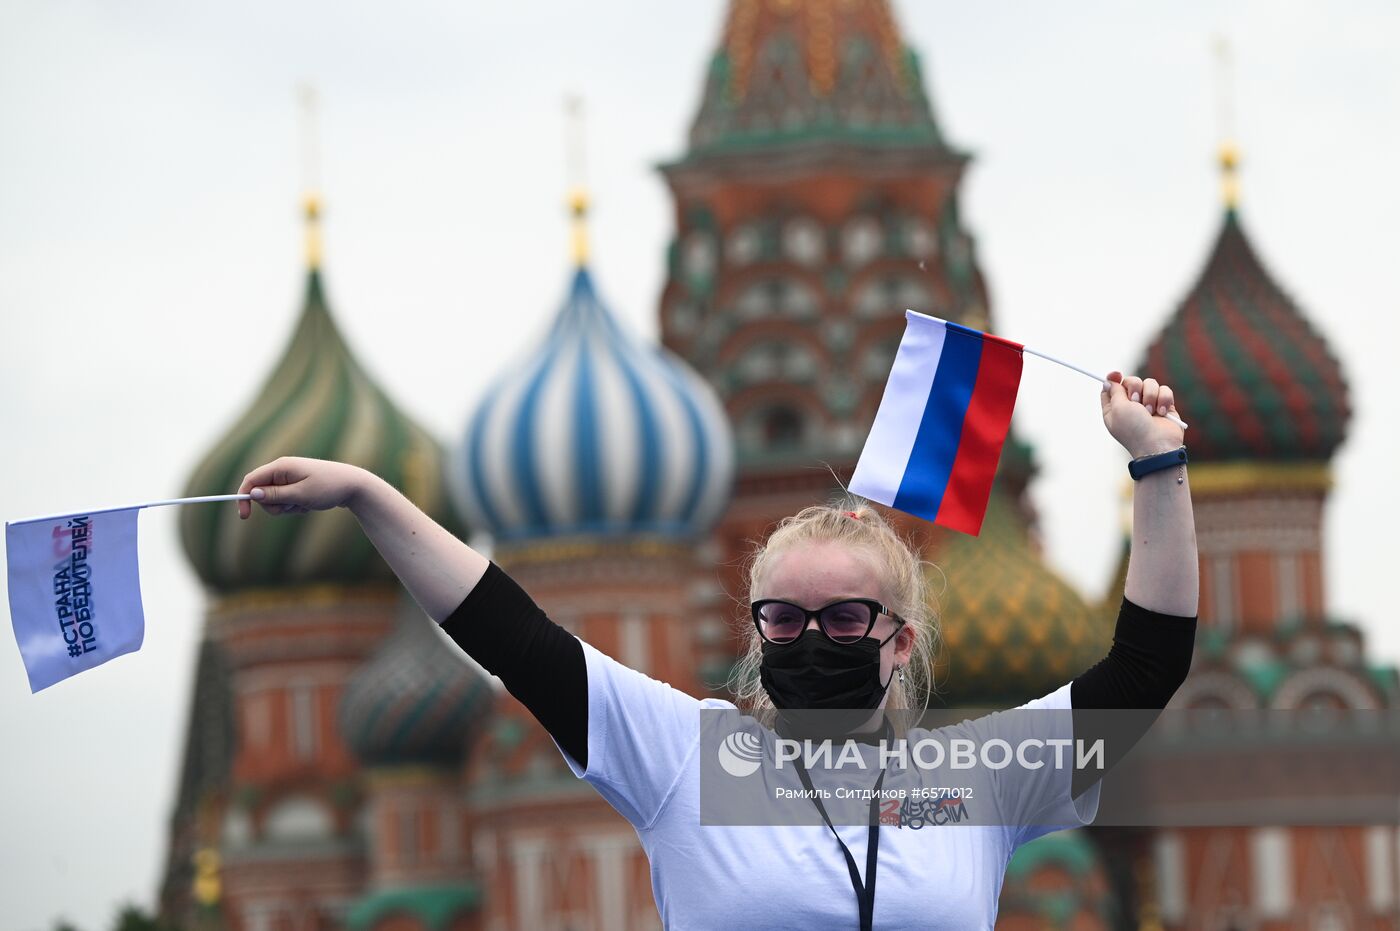 Праздничный концерт, посвященный Дню России, на Красной площади 